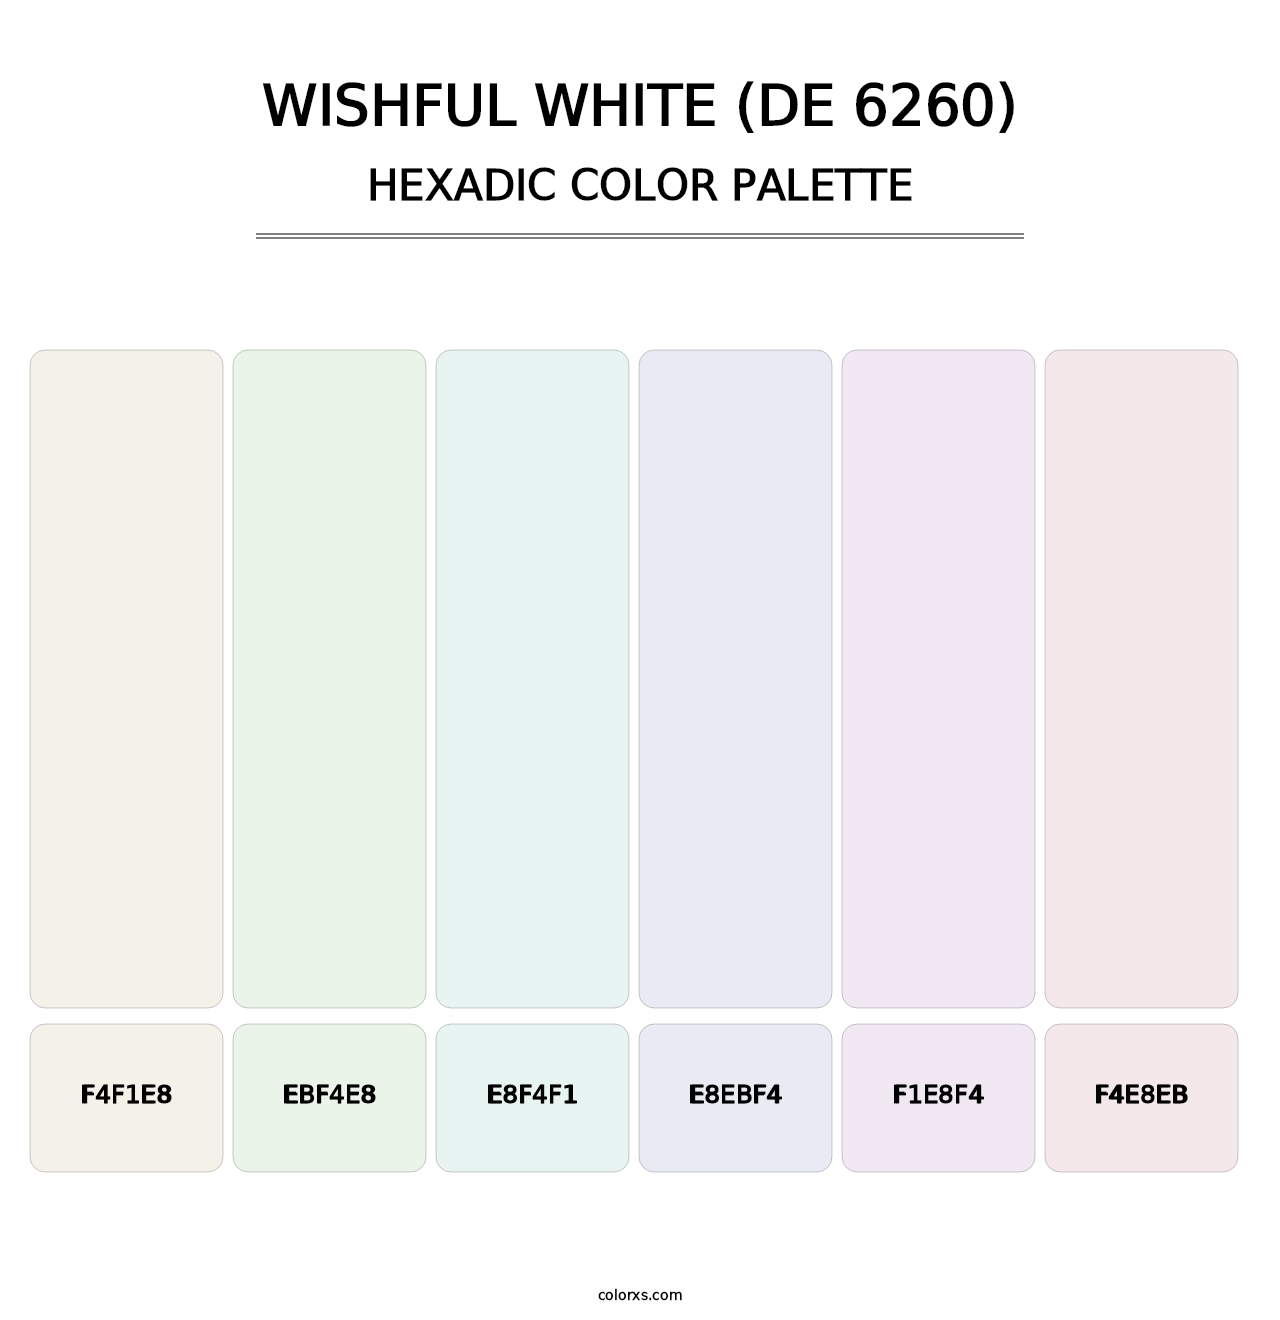 Wishful White (DE 6260) - Hexadic Color Palette